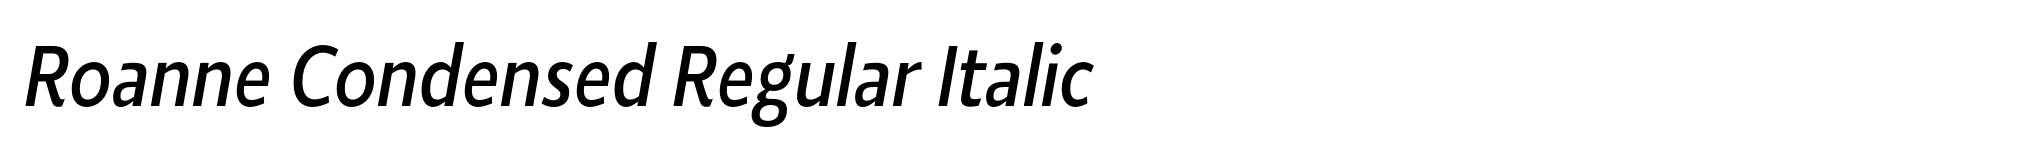 Roanne Condensed Regular Italic image